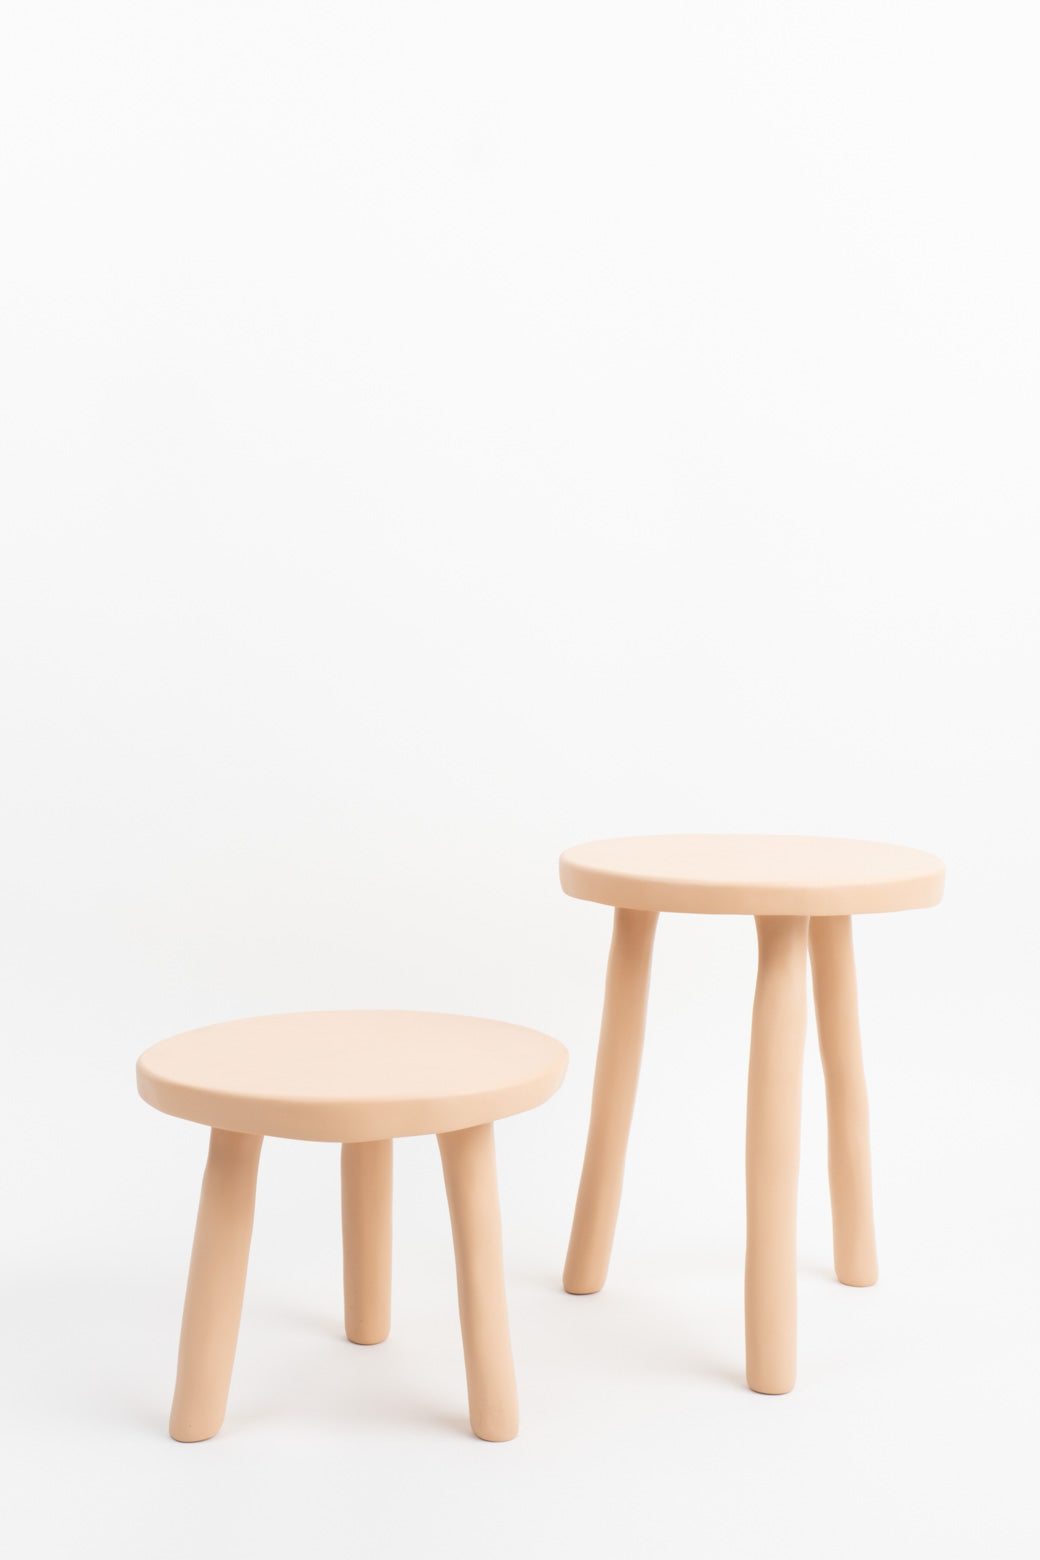 Tina Frey Designs stools